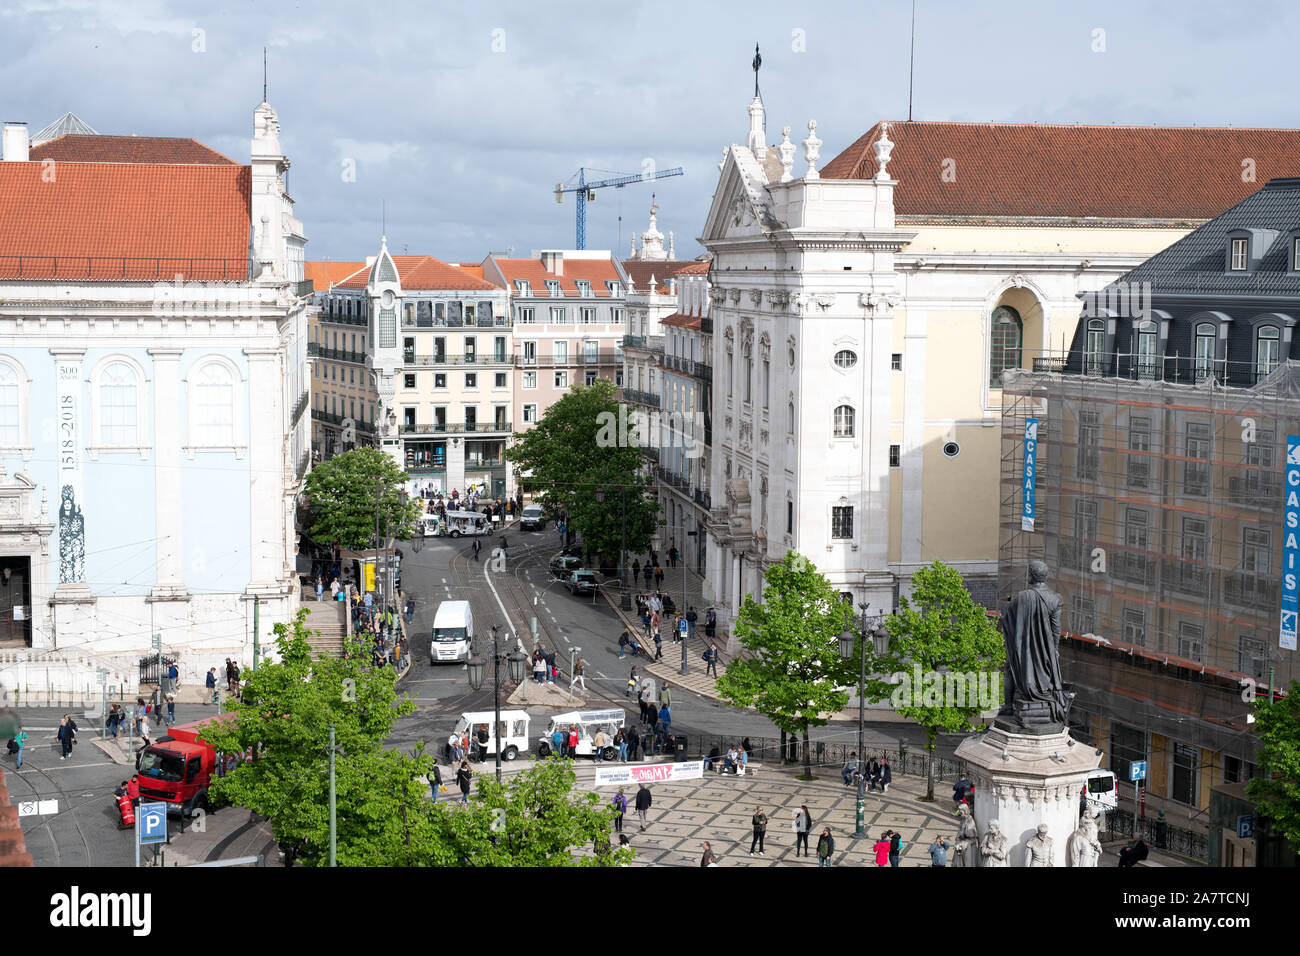 Lison, Portugal 17 Avril 2019 : vue sur la place vers la rue de Largo do Chiado où deux églises se font face. Celui de gauche est Banque D'Images